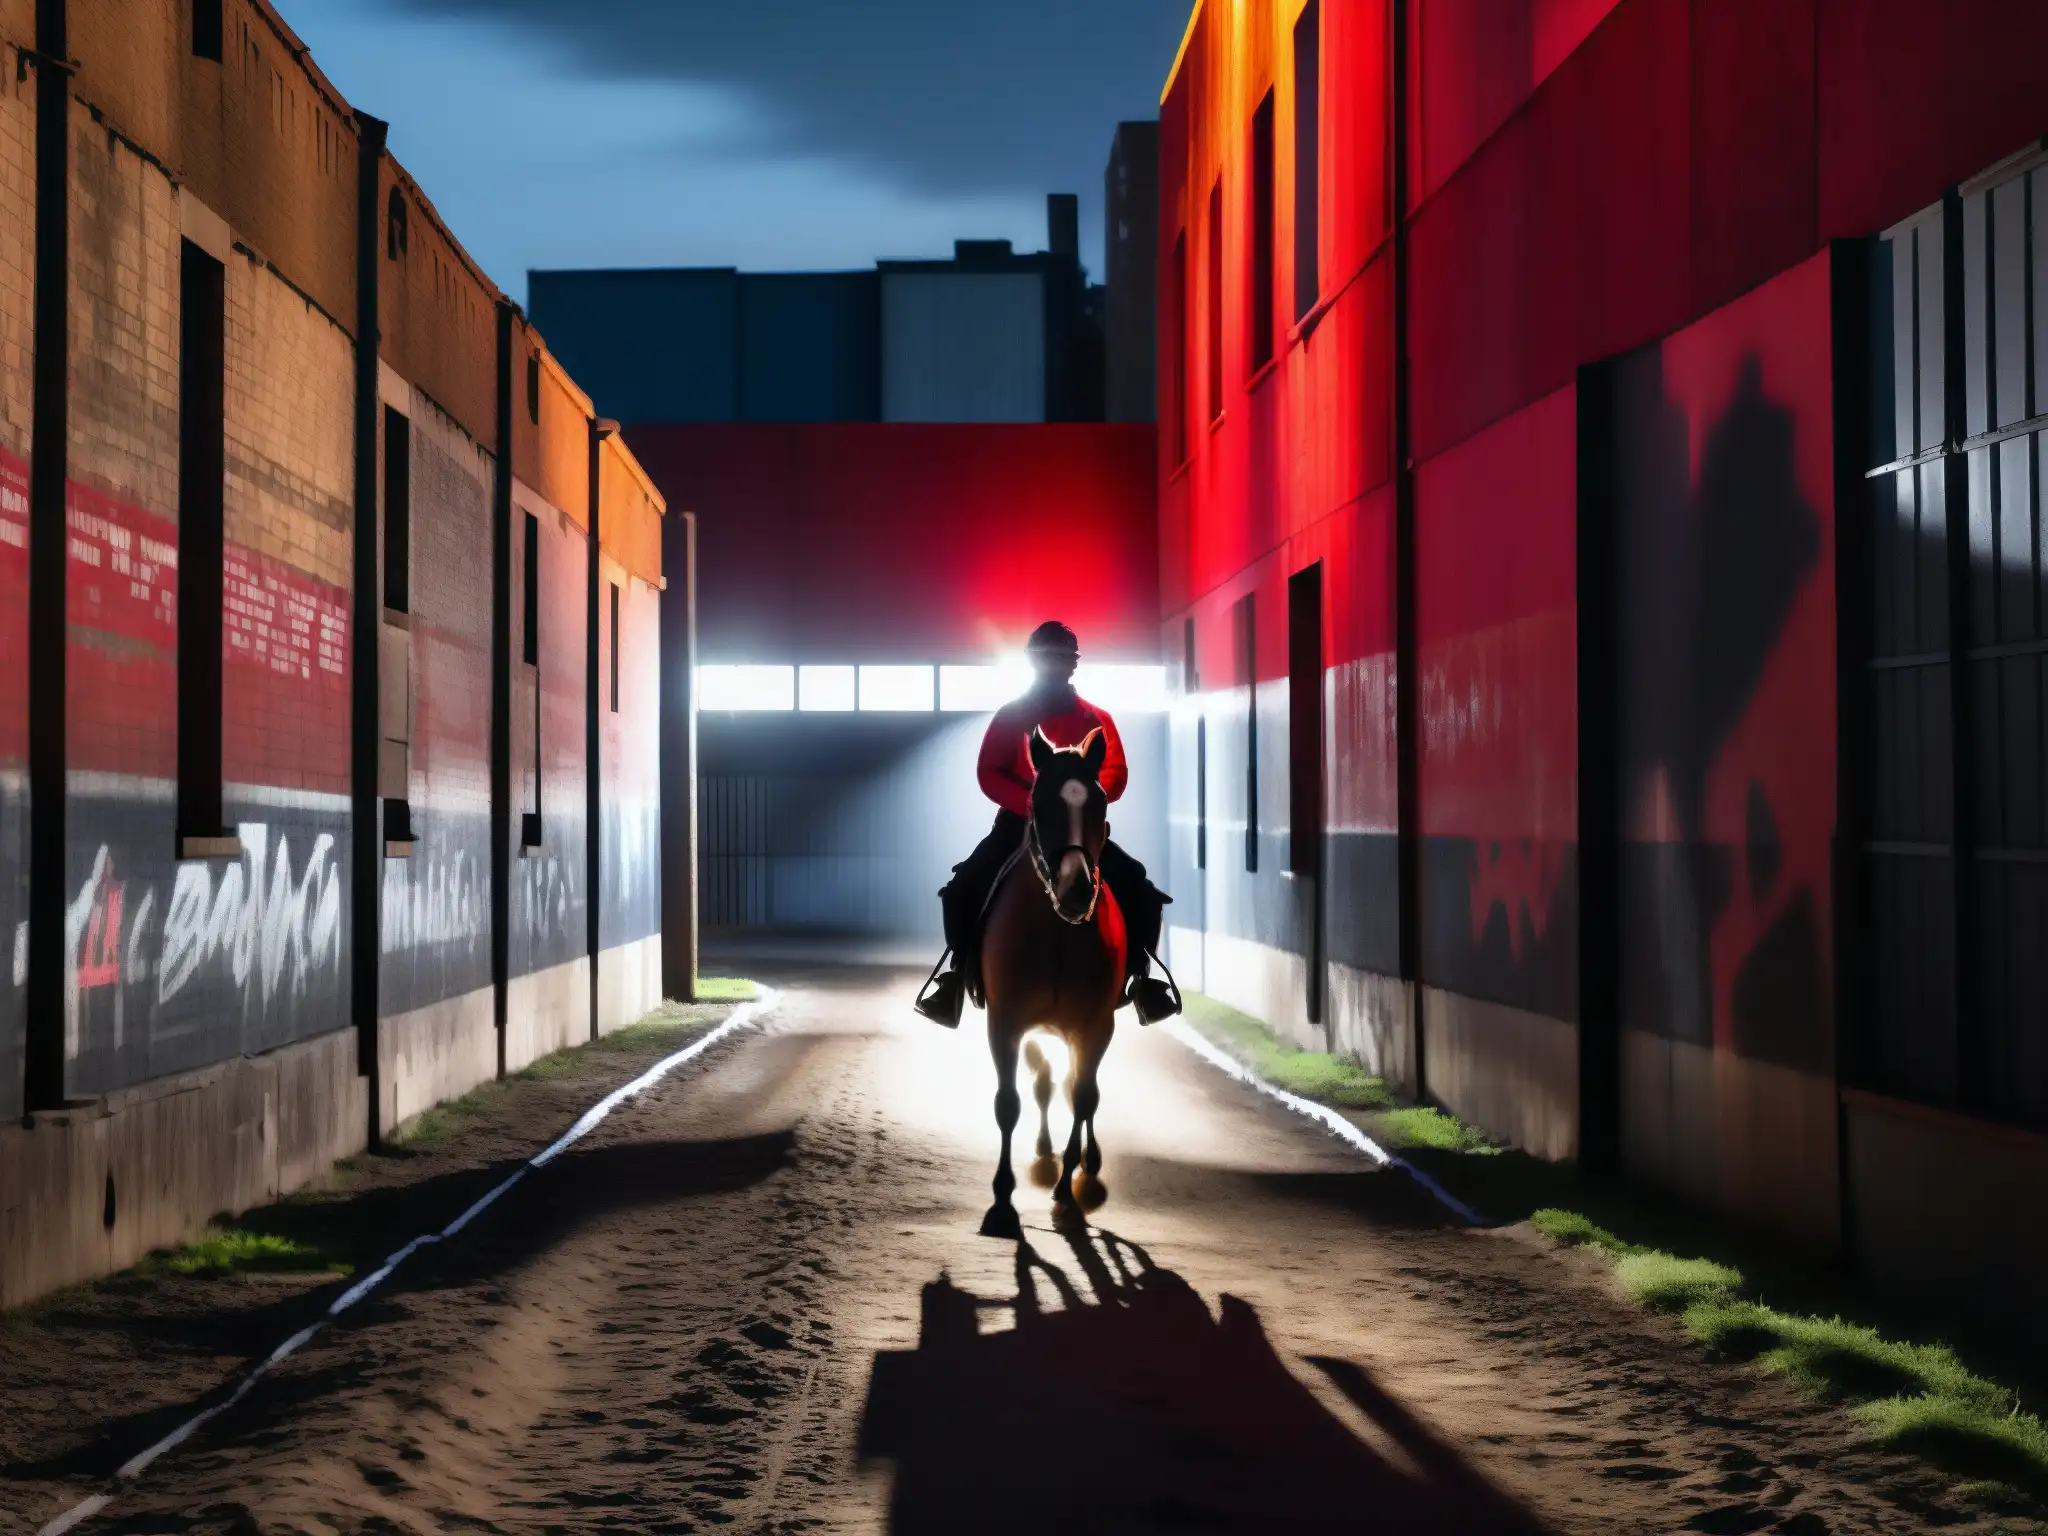 Un jinete oscuro cabalga en la noche urbana, con los ojos rojos del caballo brillando